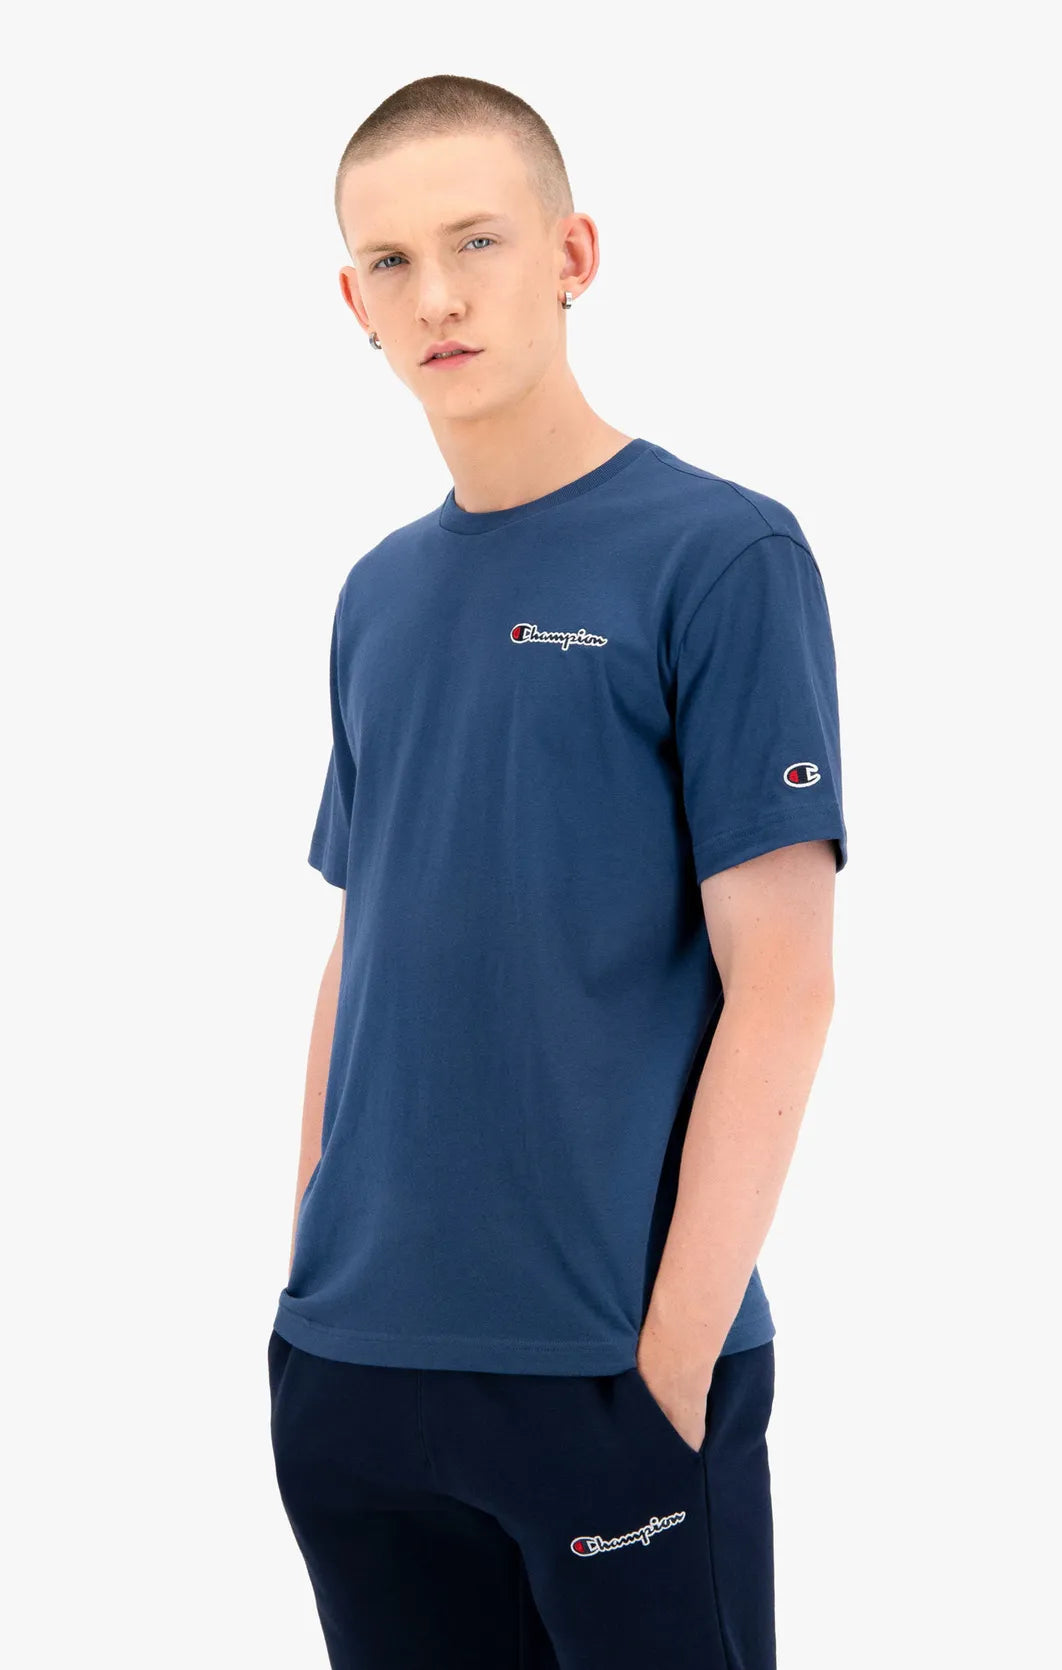 T-Shirt 216480 mit kleinem Schriftzug uscar-world – Logo Dark Turquoise Champion